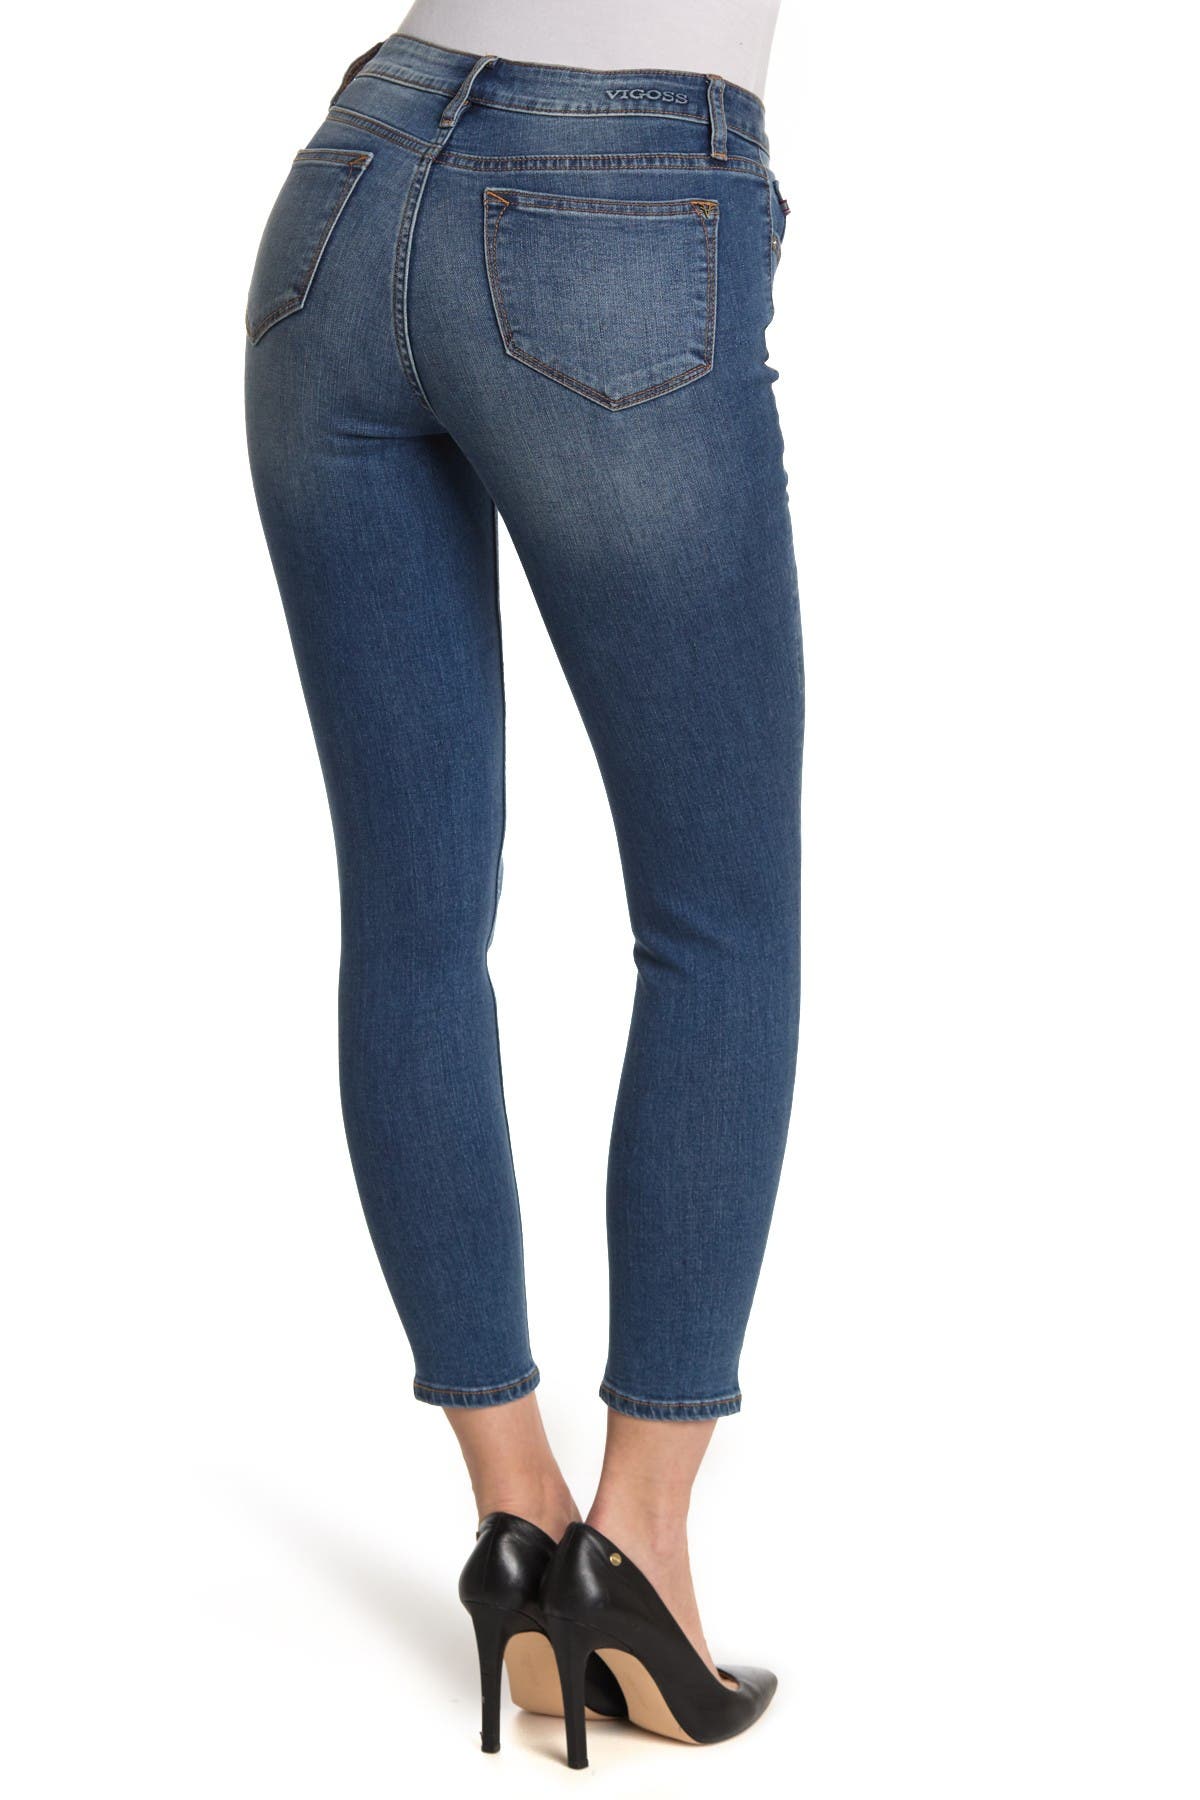 vigoss low rise jeans